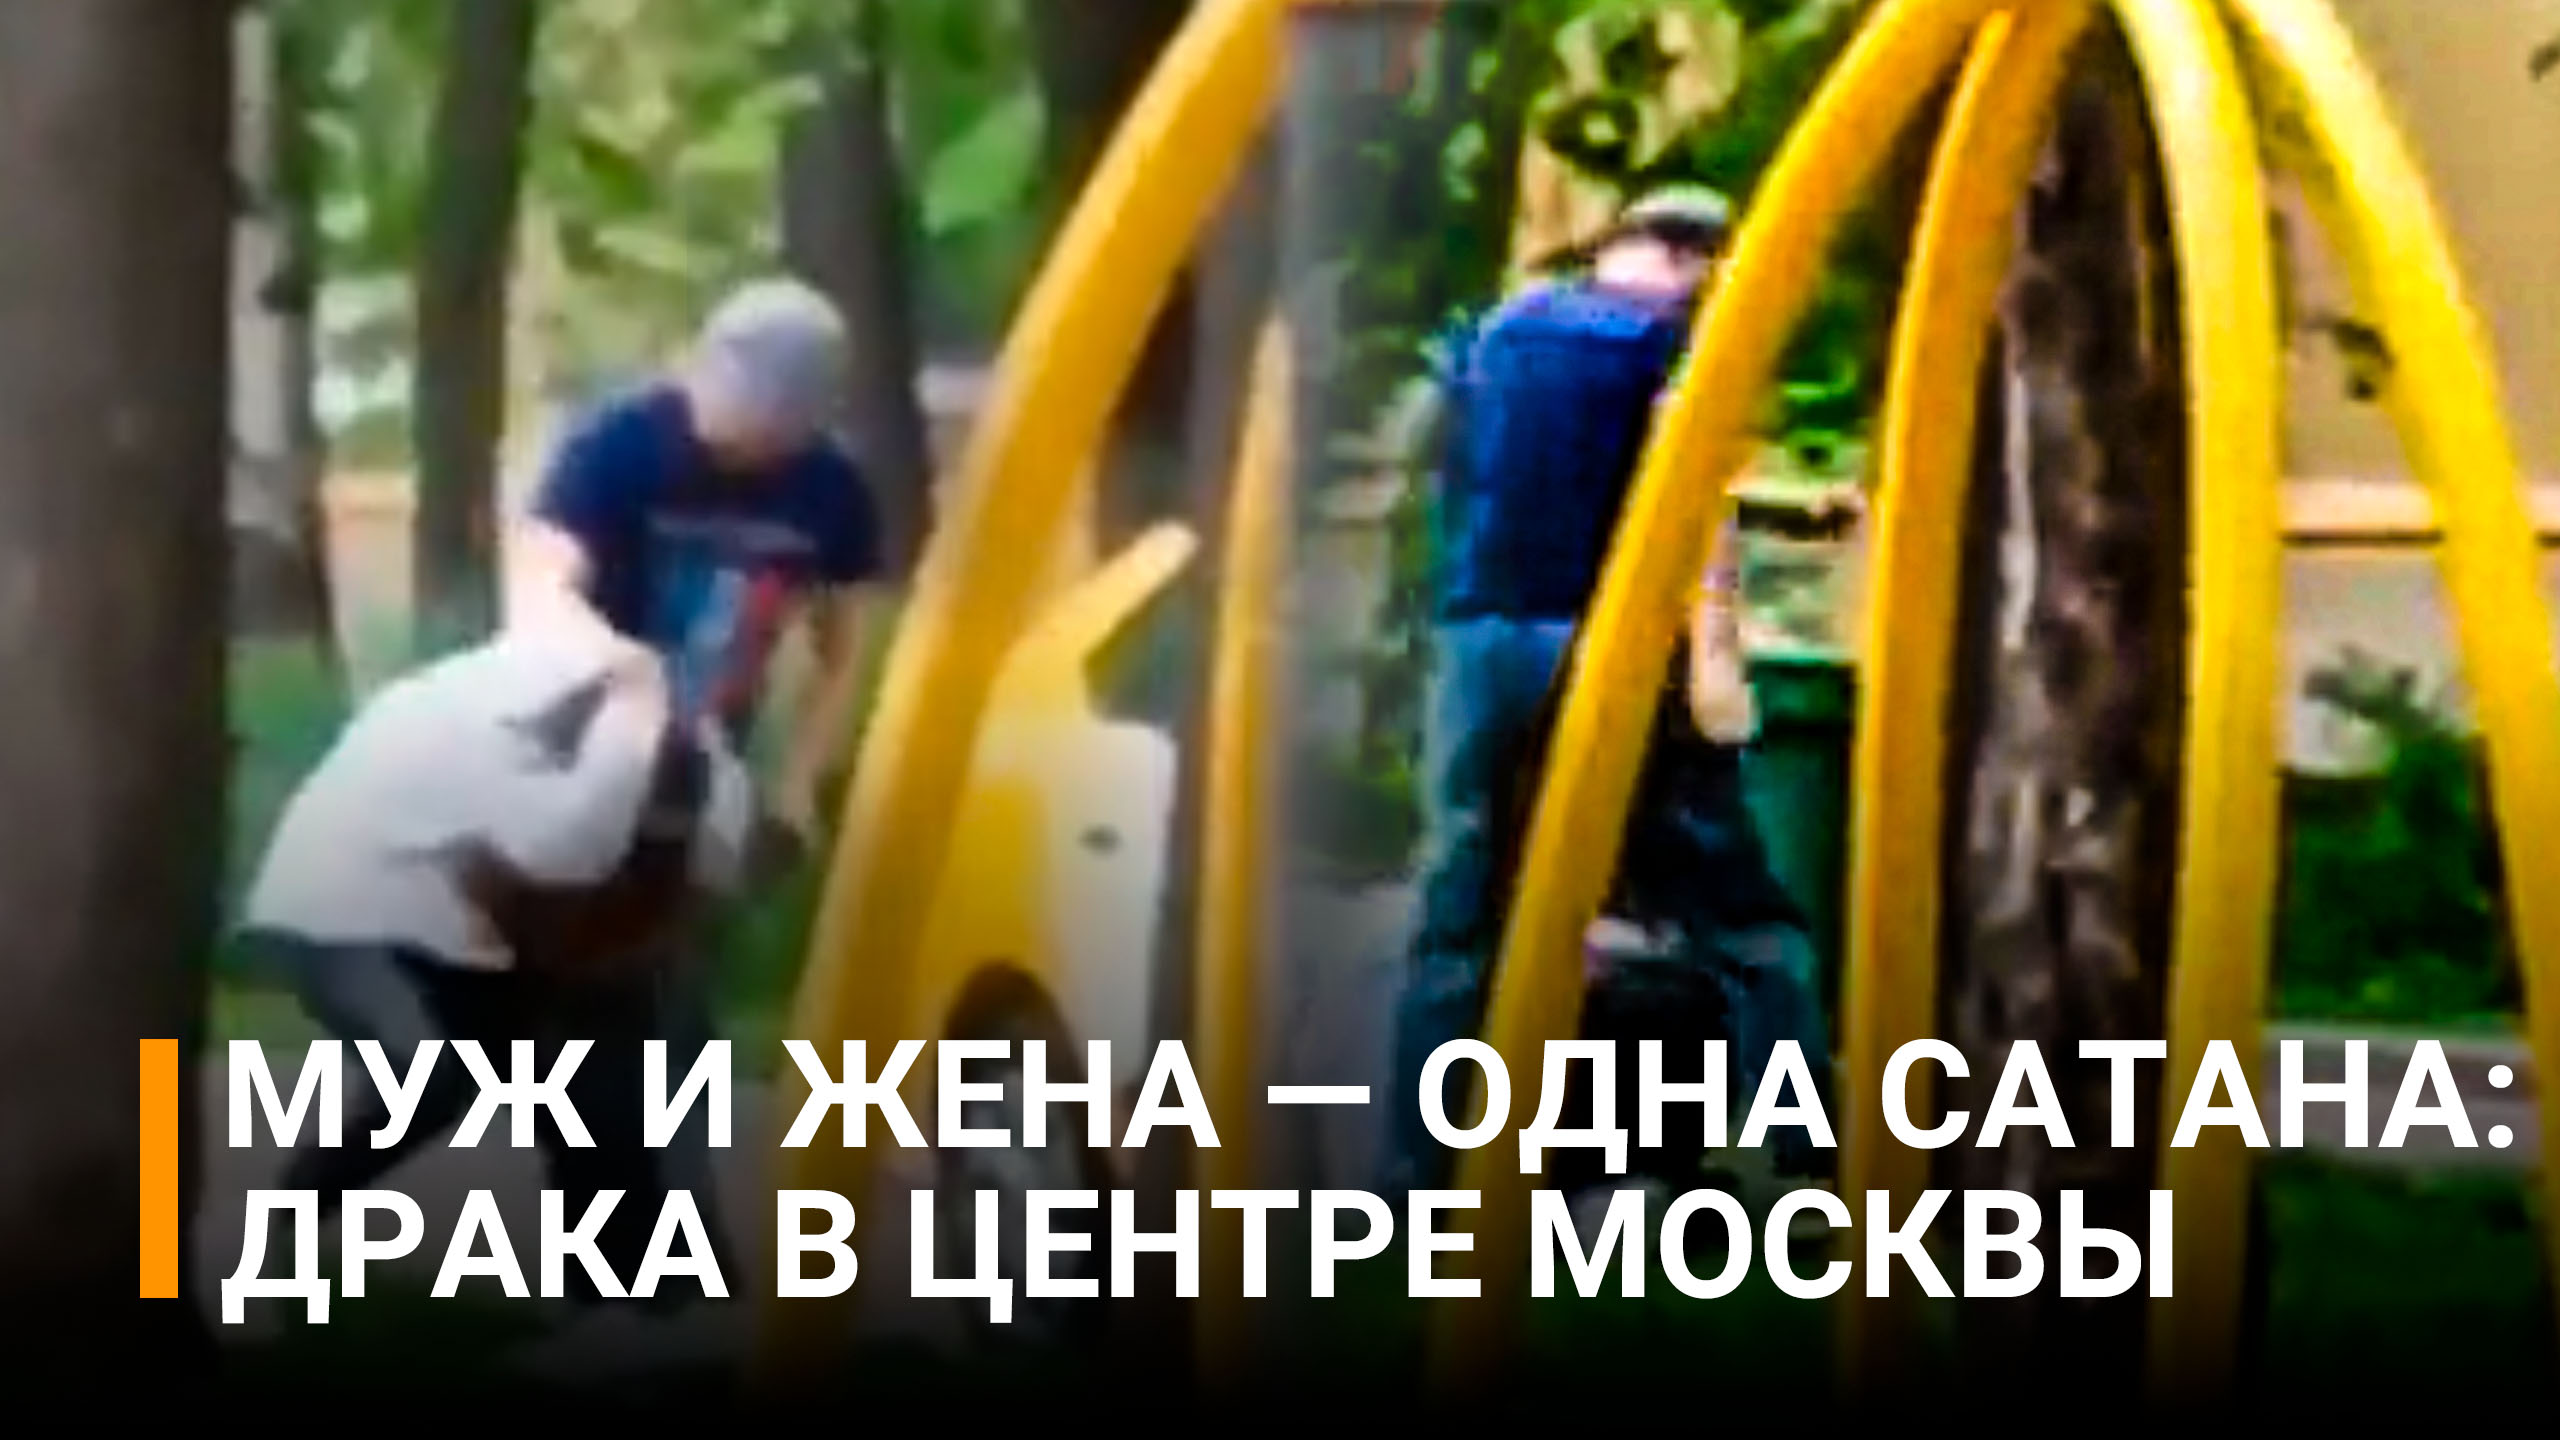 Муж-таксист набросился на жену и начал таскать за волосы / РЕН Новости